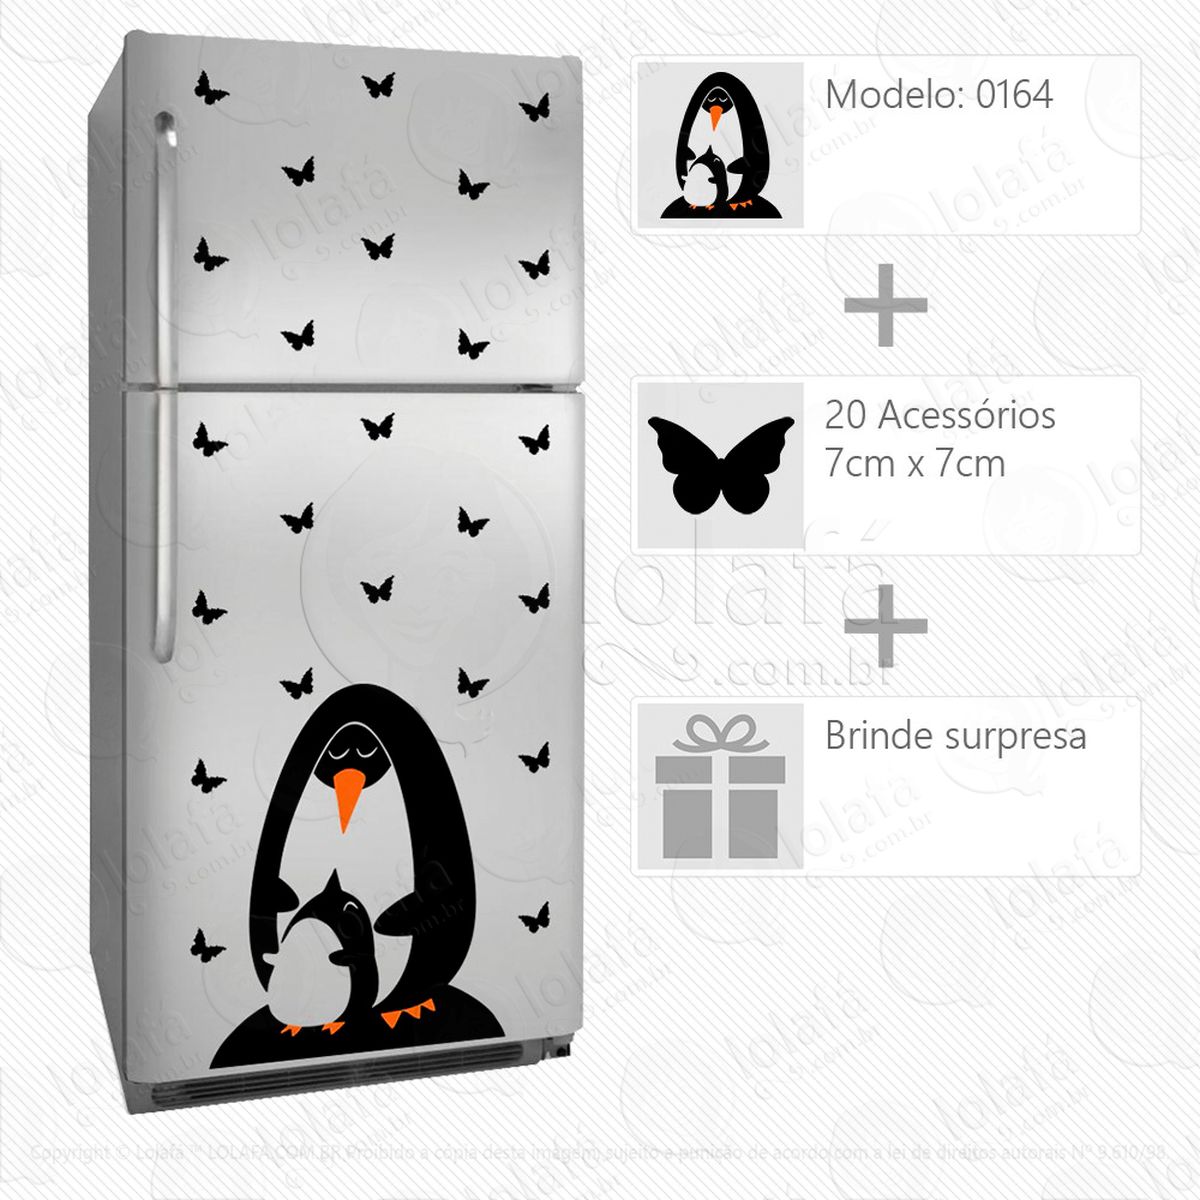 pinguins adesivo para geladeira e frigobar - mod:164